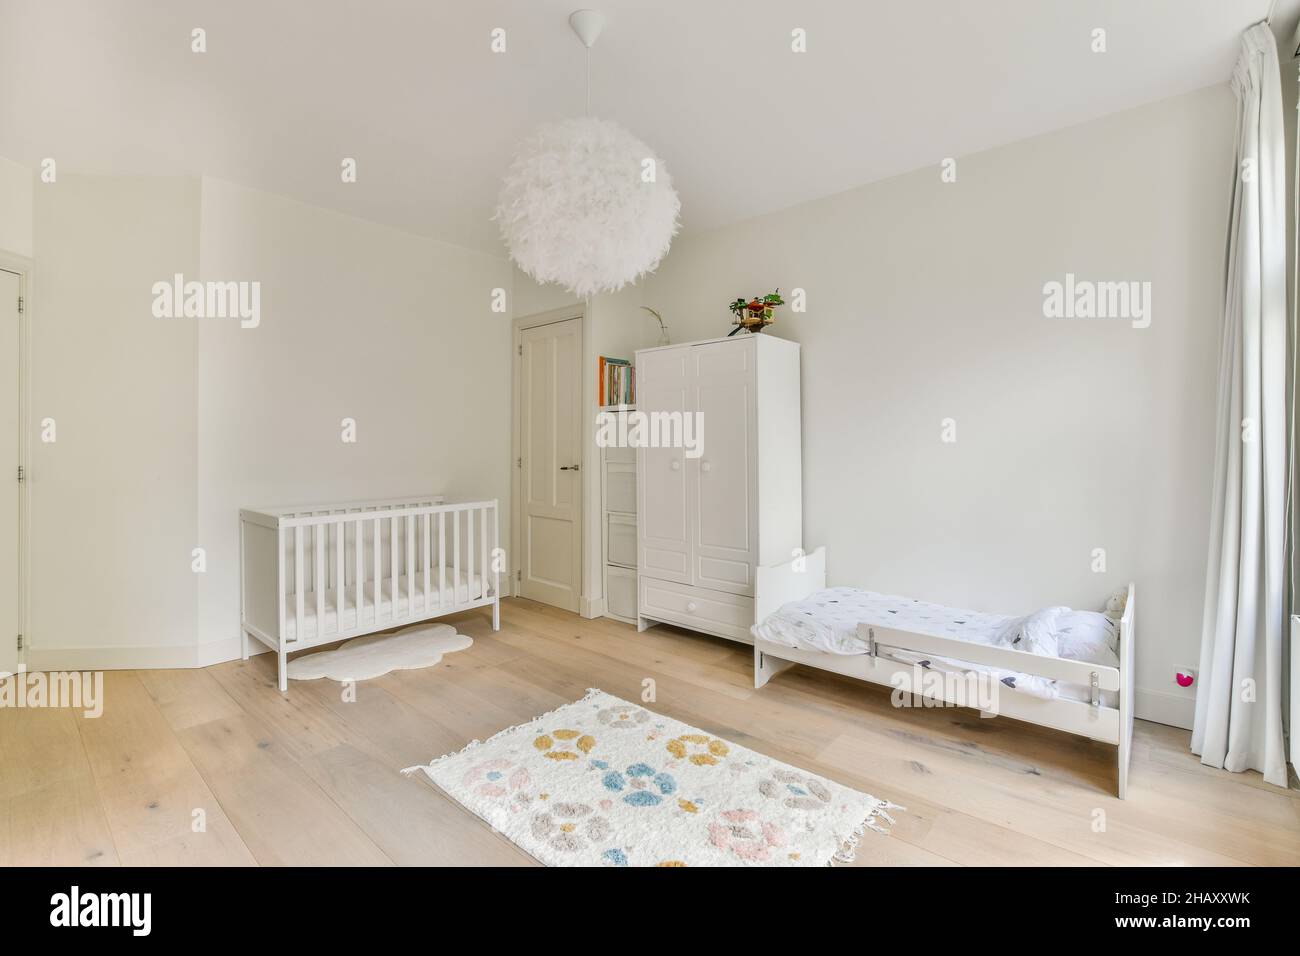 Kinderbett und Babybett in hellen geräumigen Schlafzimmer und Schrank in  der Nähe der weißen geschlossenen Tür in stilvollen Wohnung platziert  Stockfotografie - Alamy